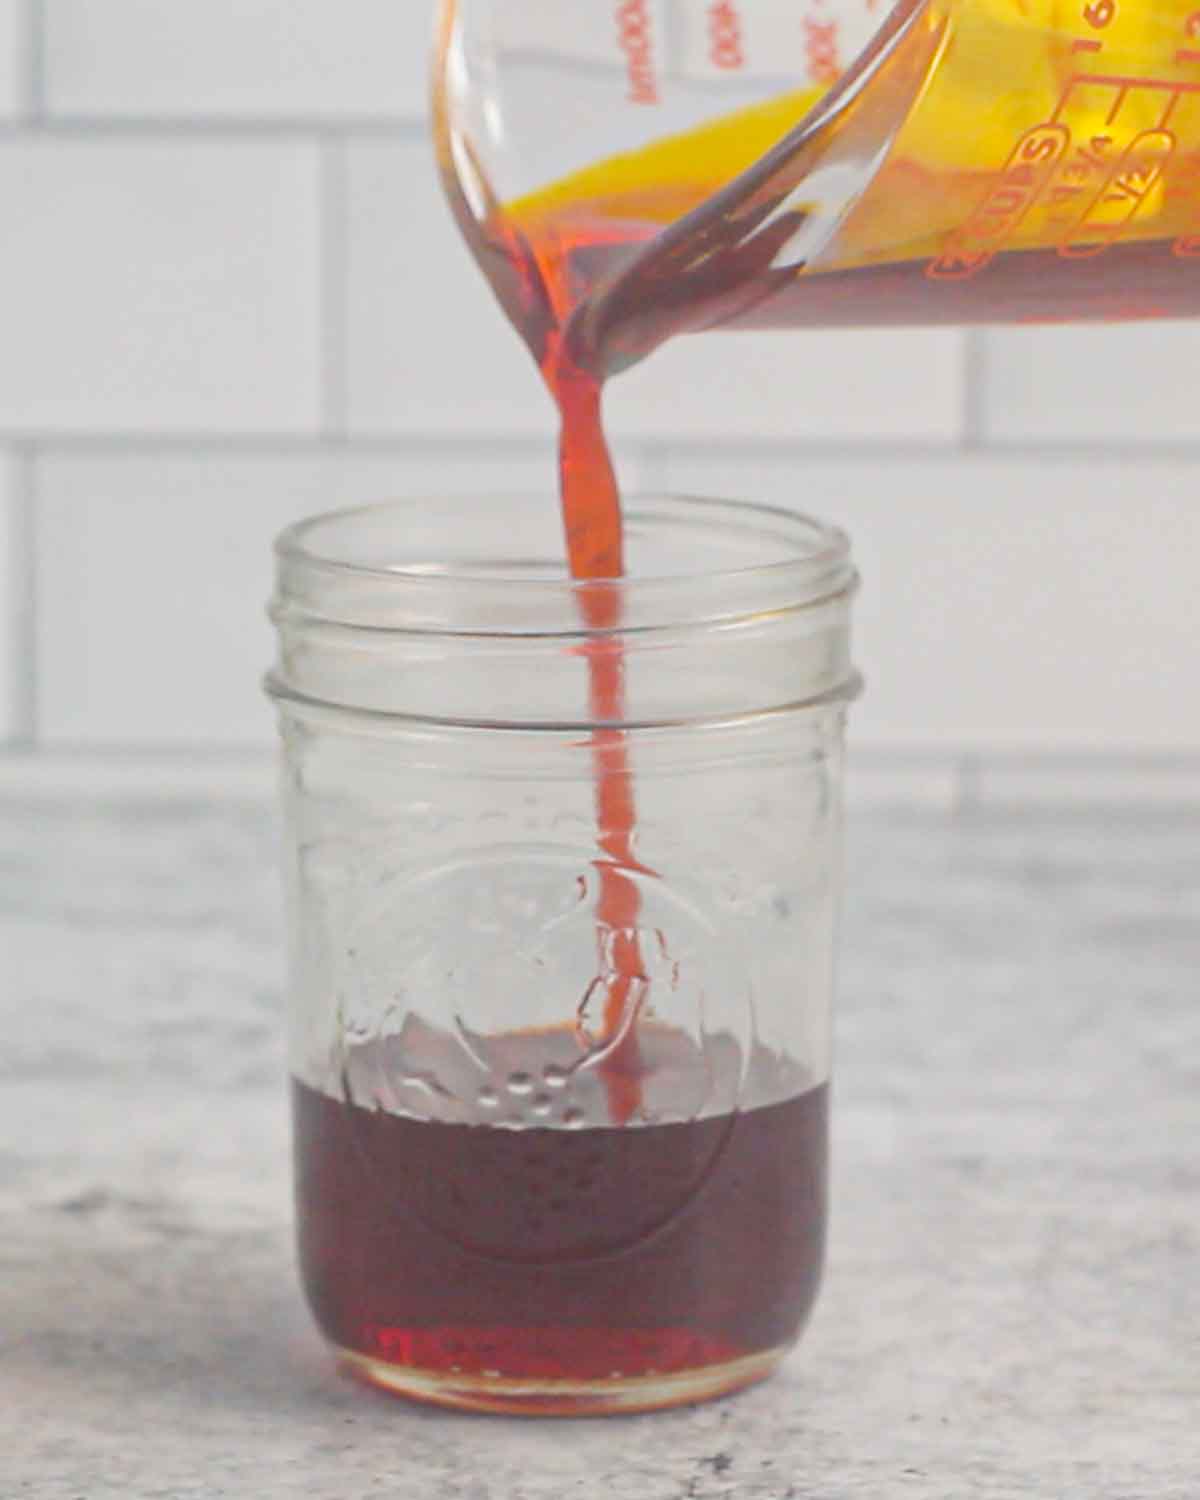 Pouring strained annatto oil into a mason jar.